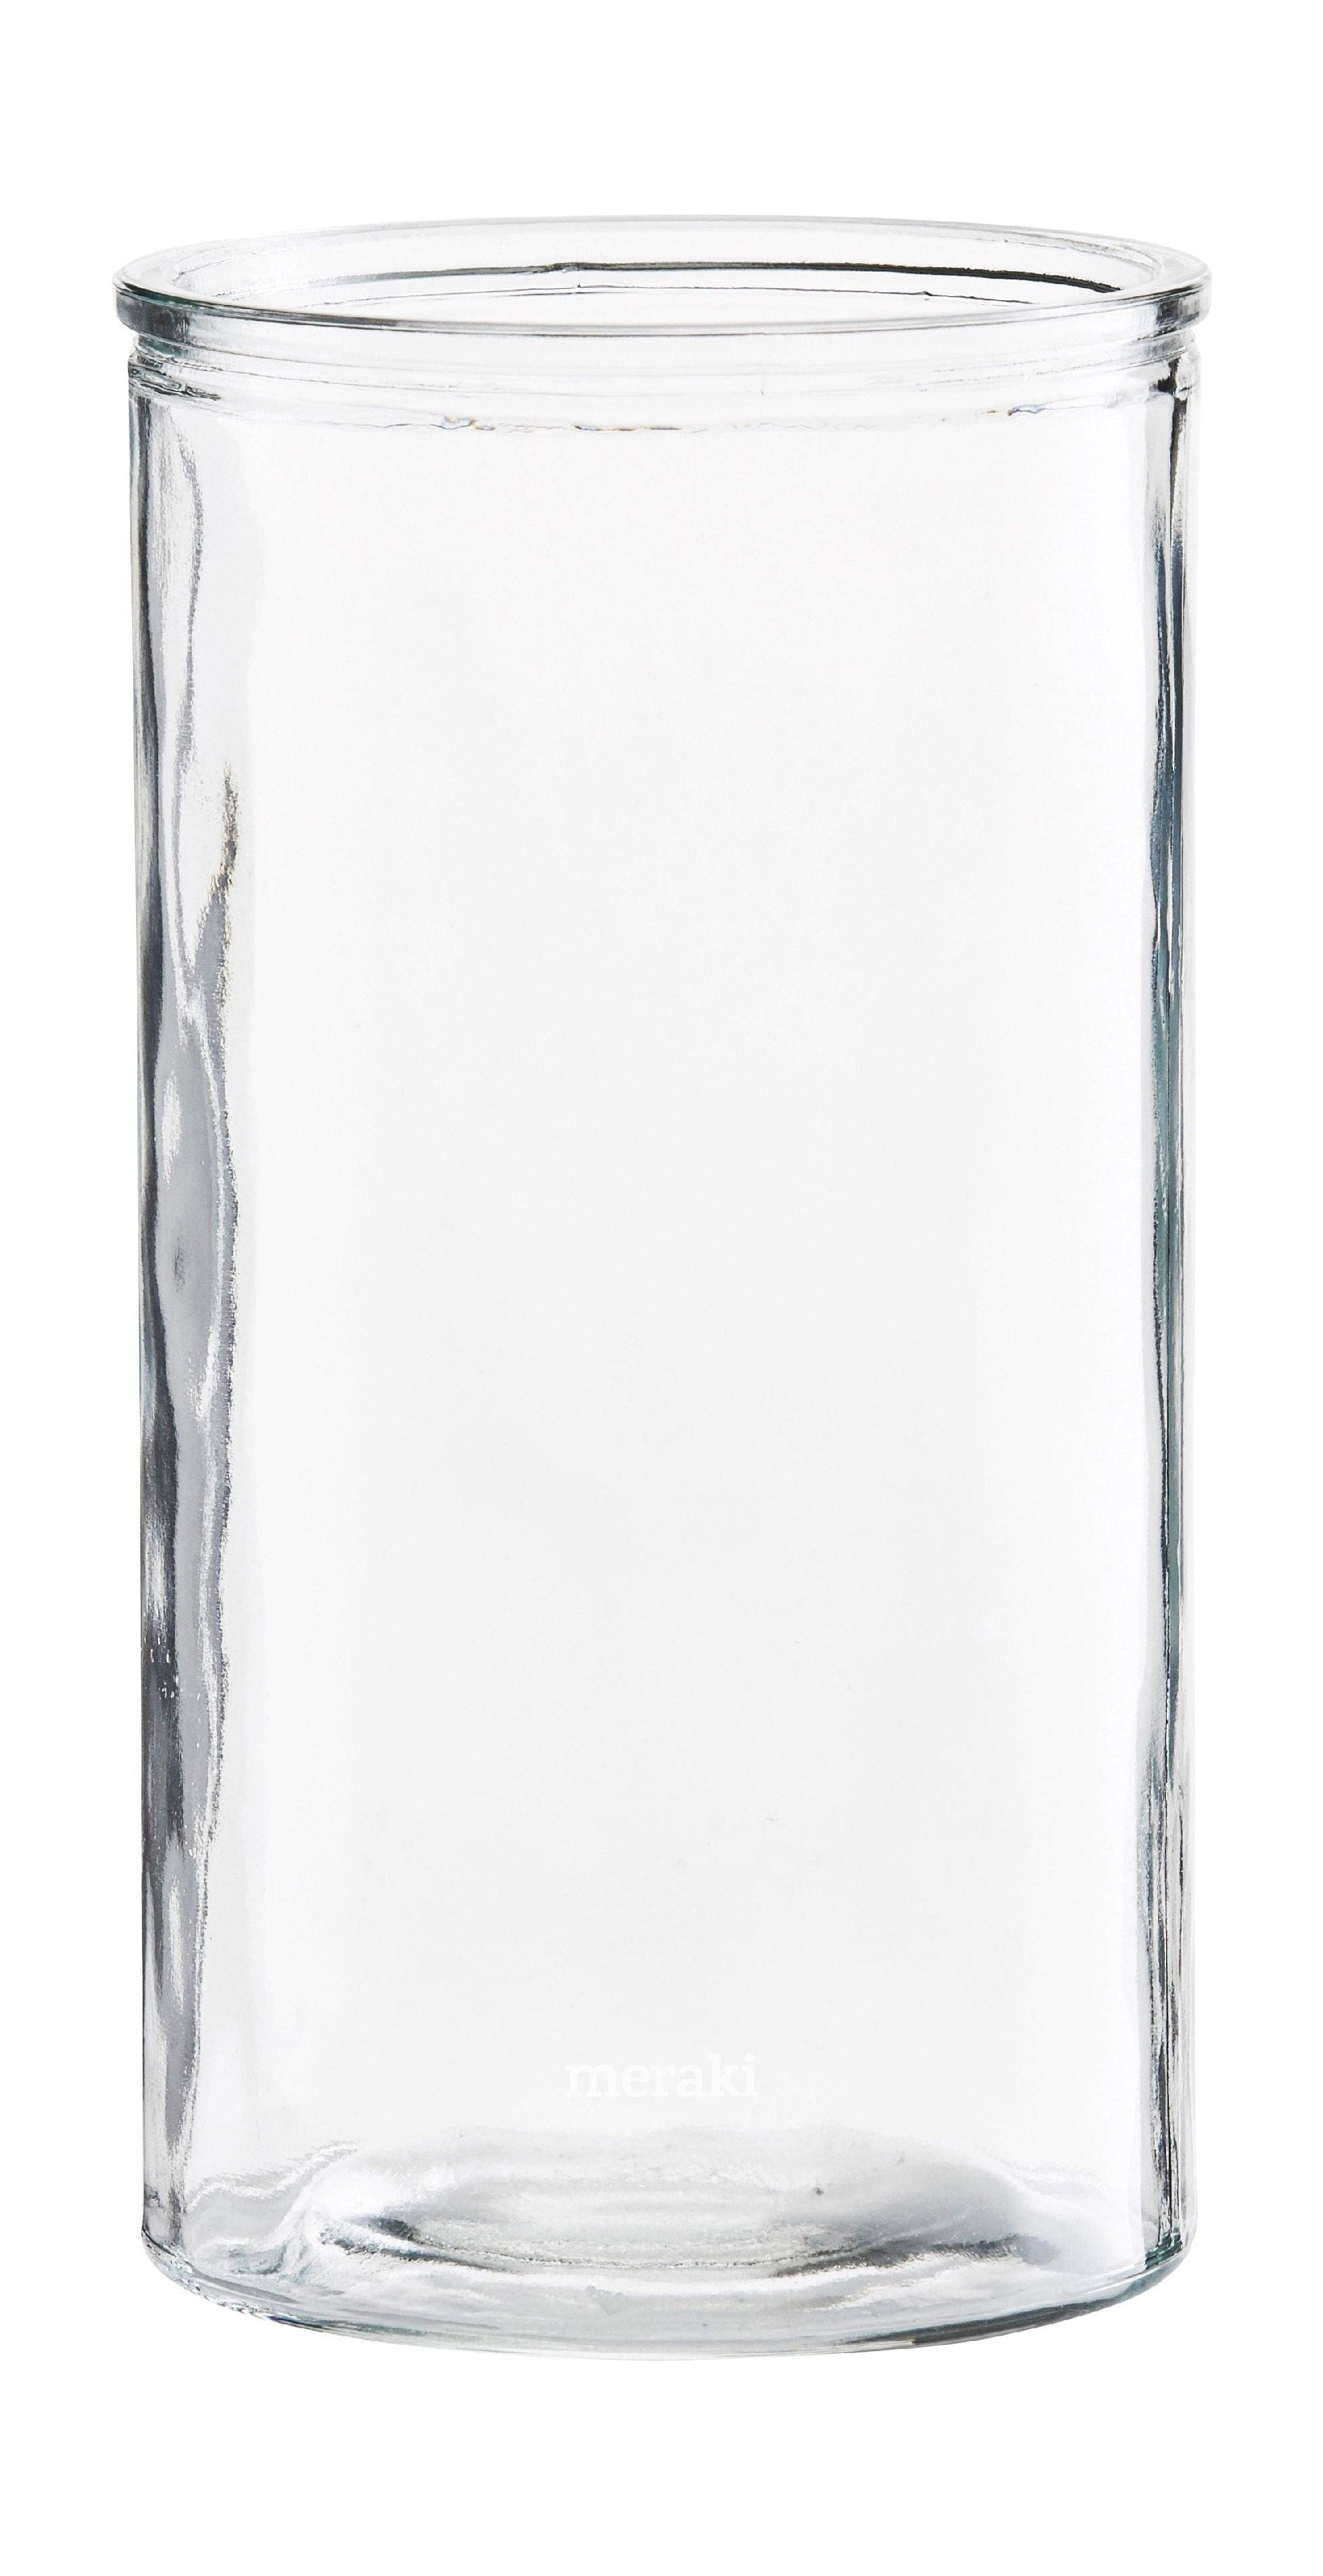 Meraki Vase de cylindre, Øx h 13x24